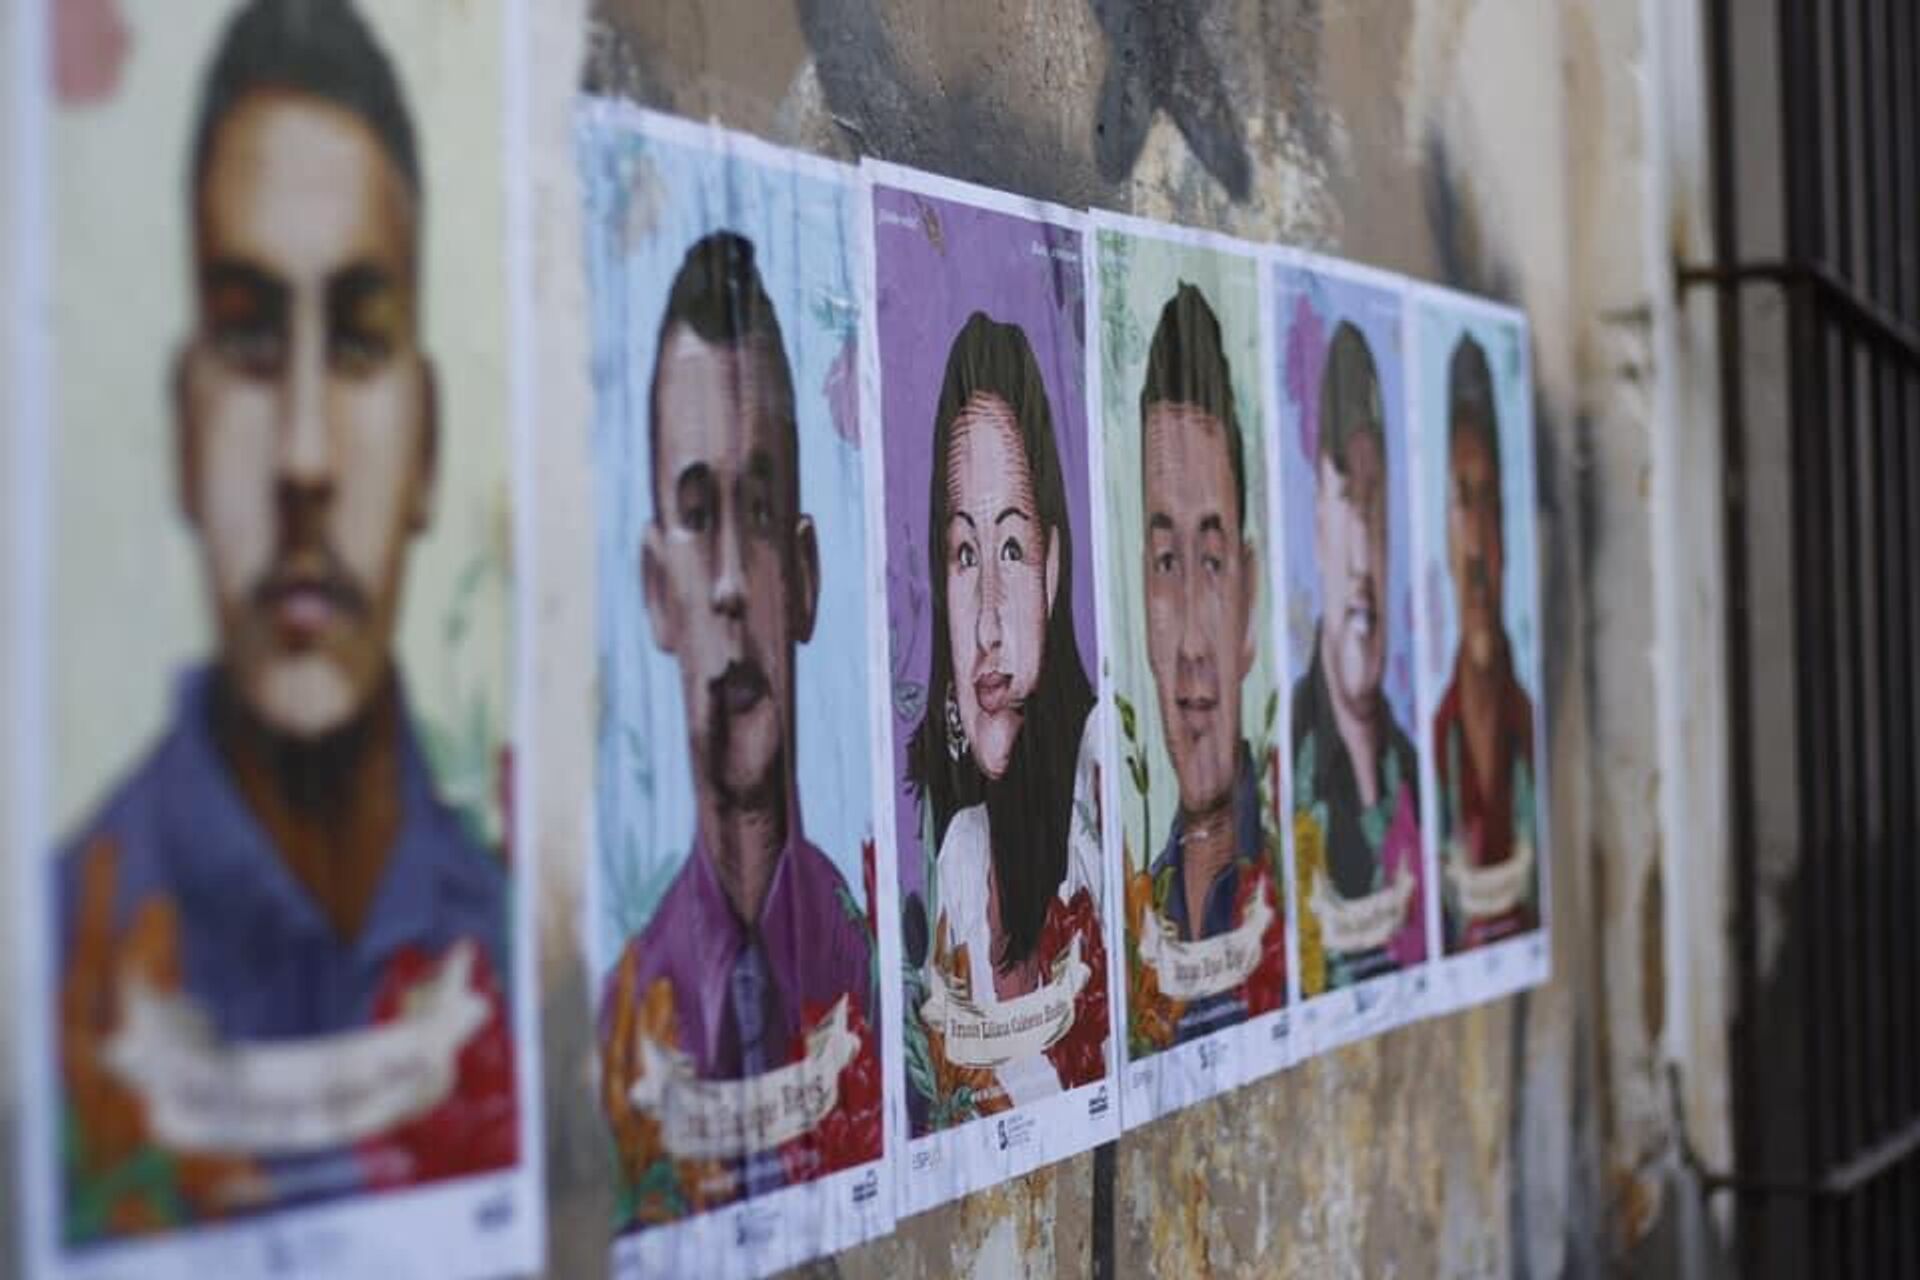 Retratos de personas desaparecidas buscadas en Sinaloa, adheridos a las paredes por el Colectivo Juan Panadero. - Sputnik Mundo, 1920, 21.11.2022